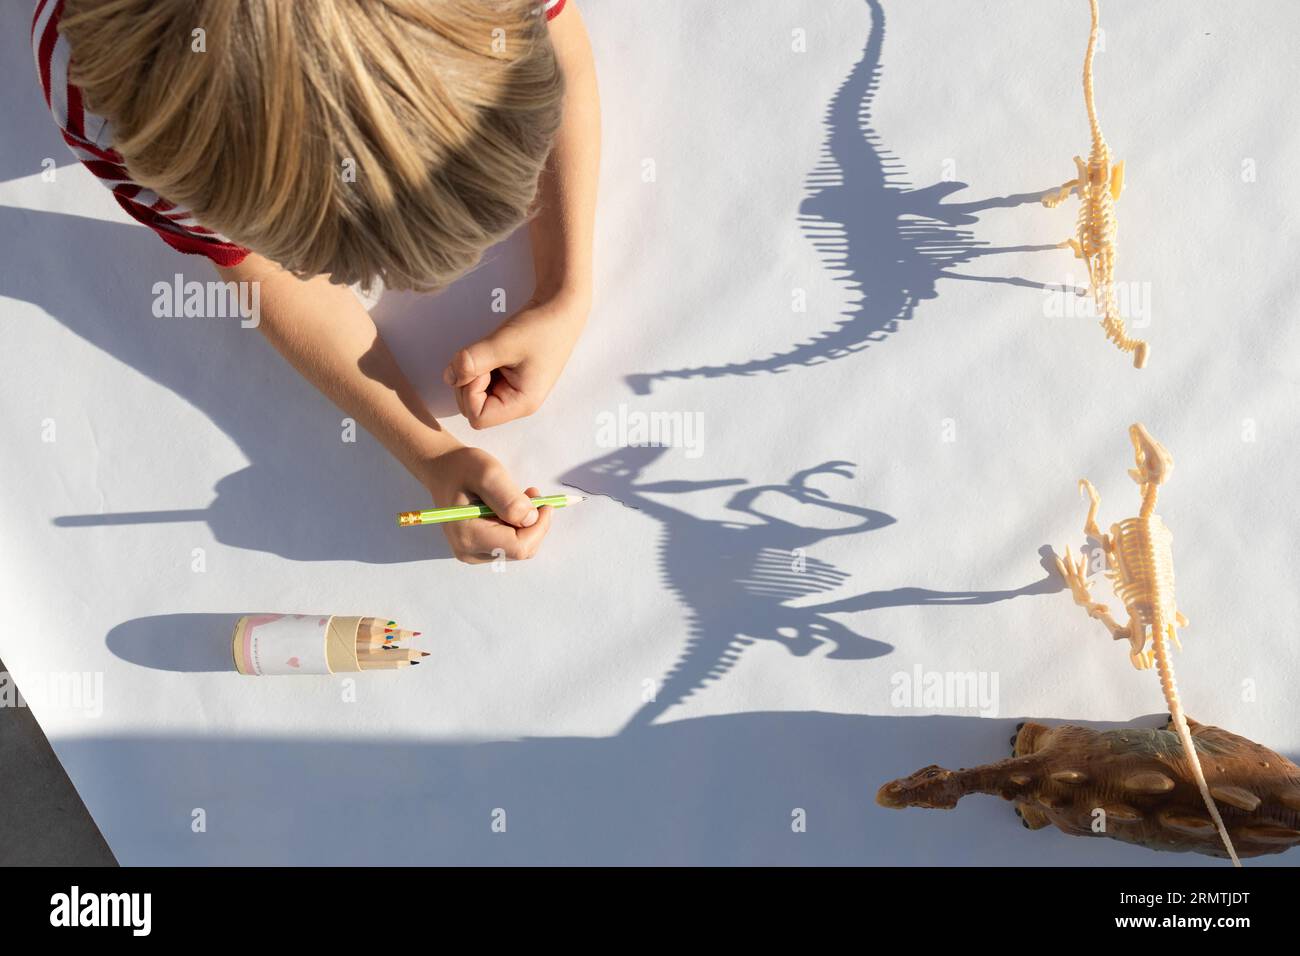 il bambino traccia con una matita le ombre contrastanti dagli scheletri dei dinosauri giocattolo. disegno di uno studente della scuola elementare, passione per la paleontologia, ide Foto Stock